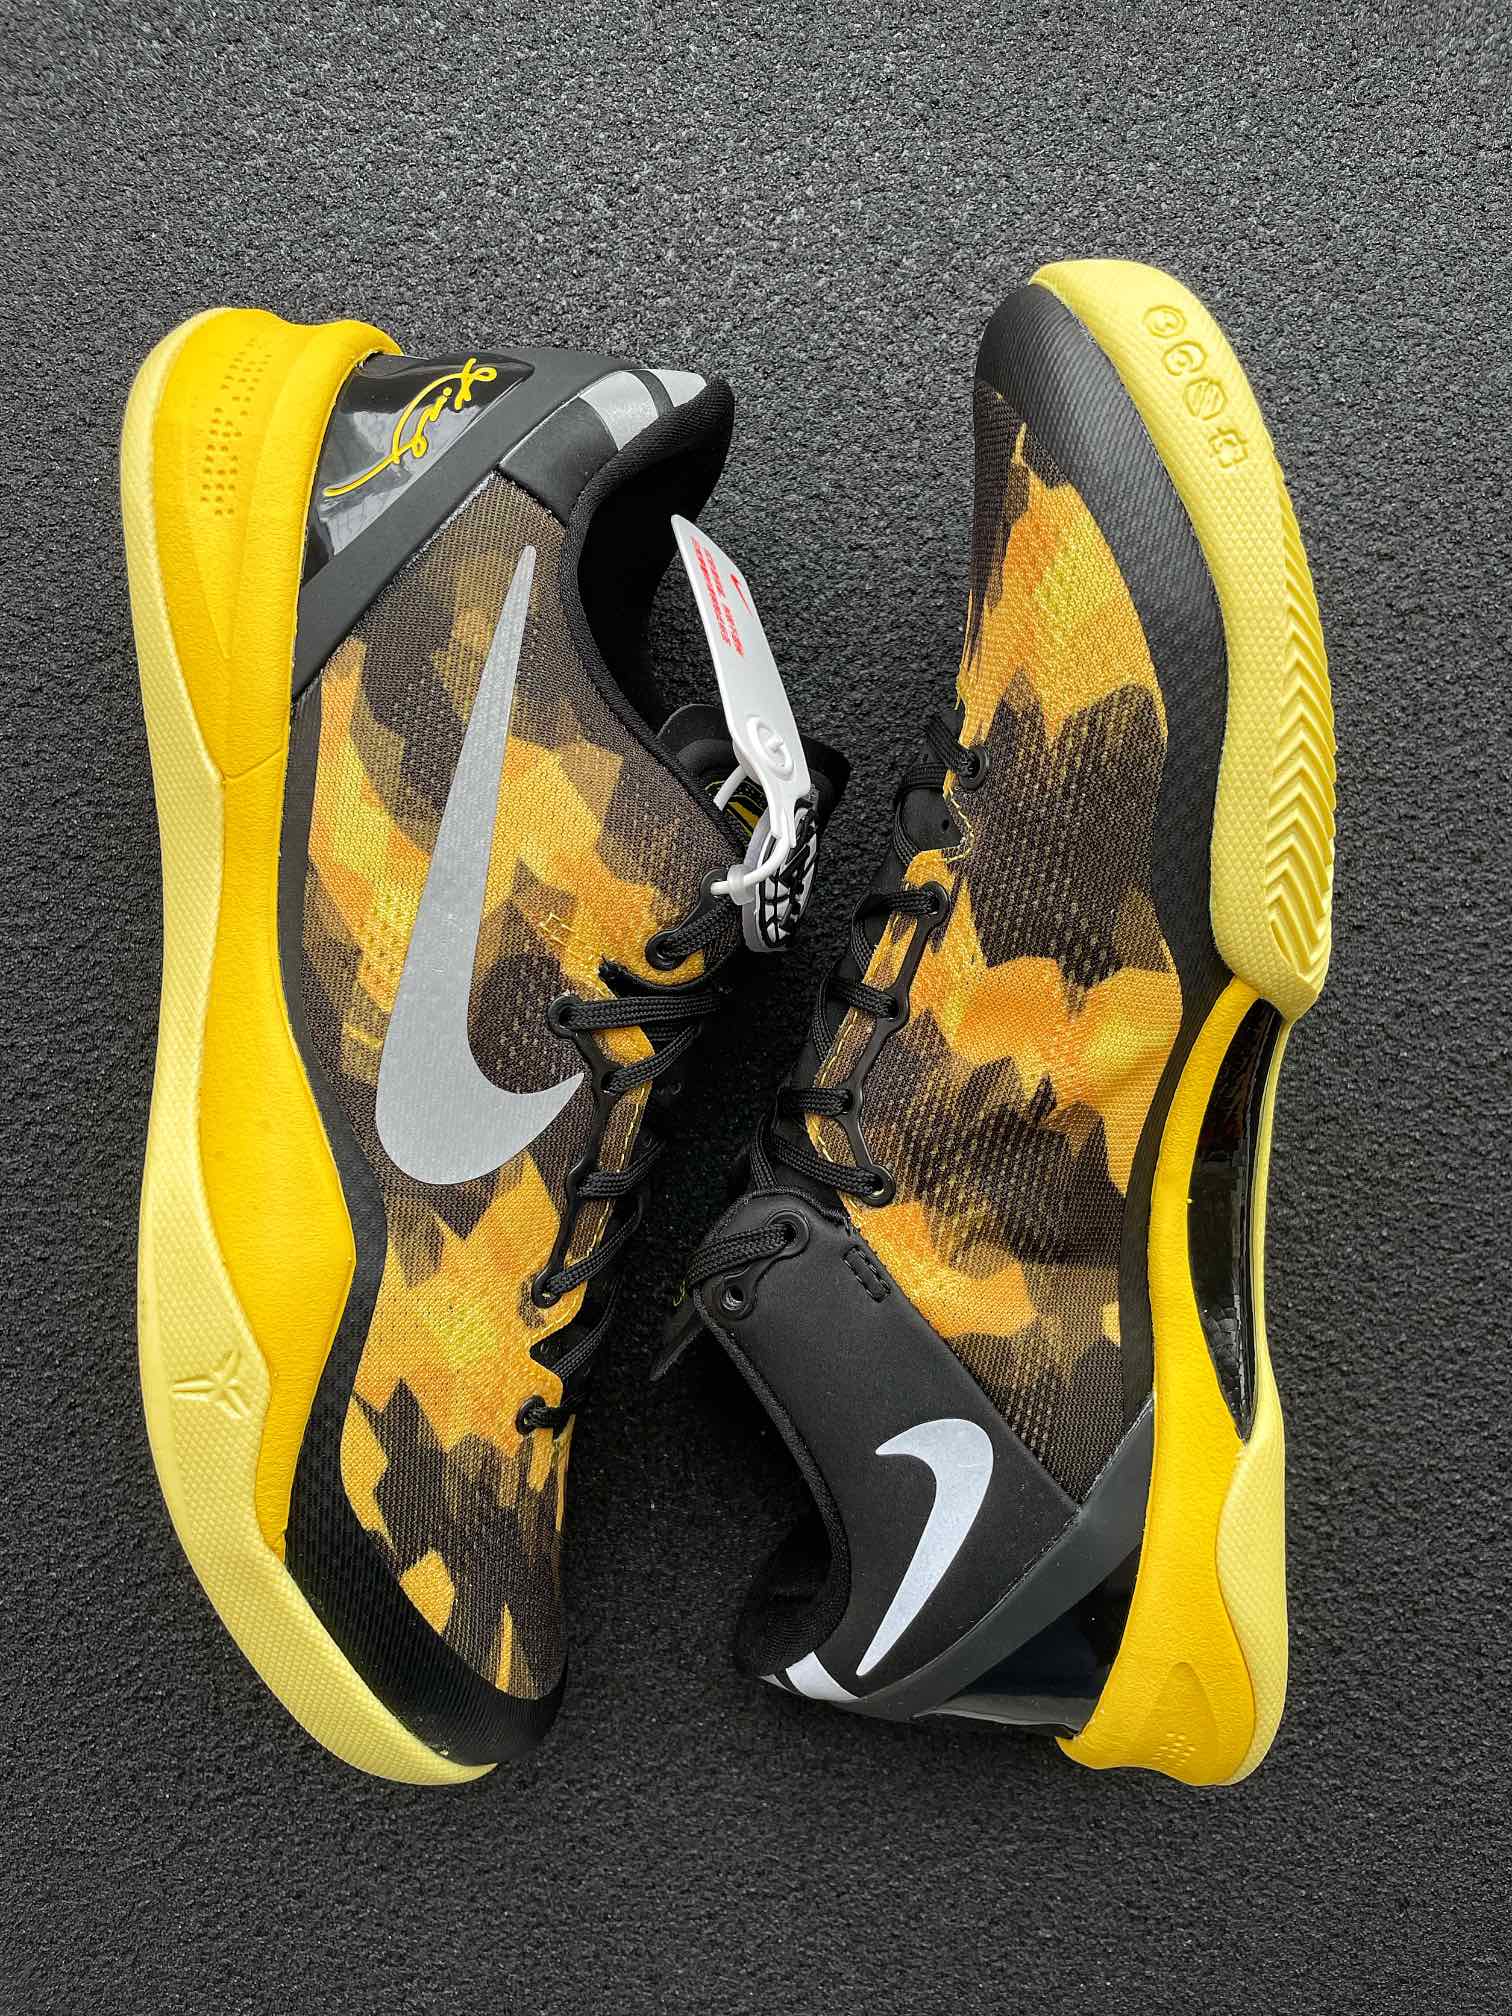 Max Batch-Nike Kobe 8 Protro “Sulfur/Electric”